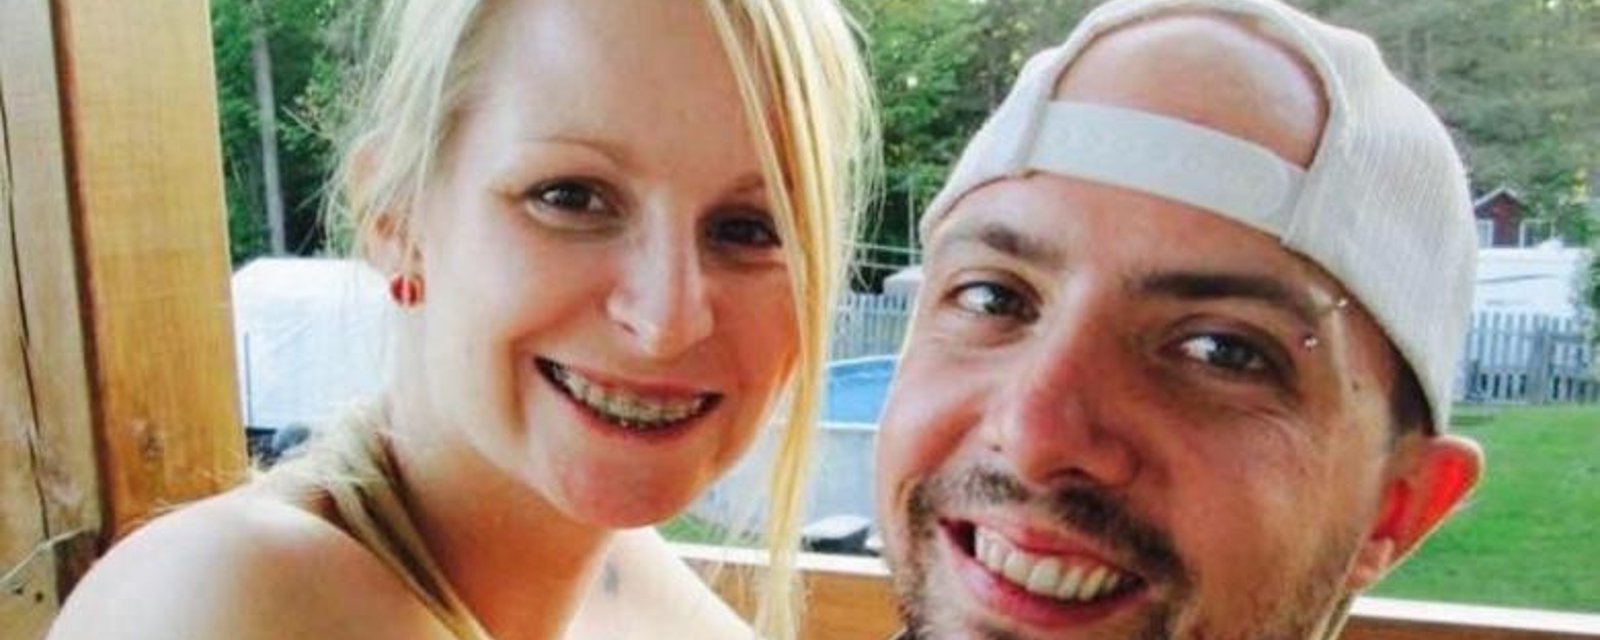 Le conjoint de la jeune femme enceinte happée mortellement écrit un second long message sur Facebook